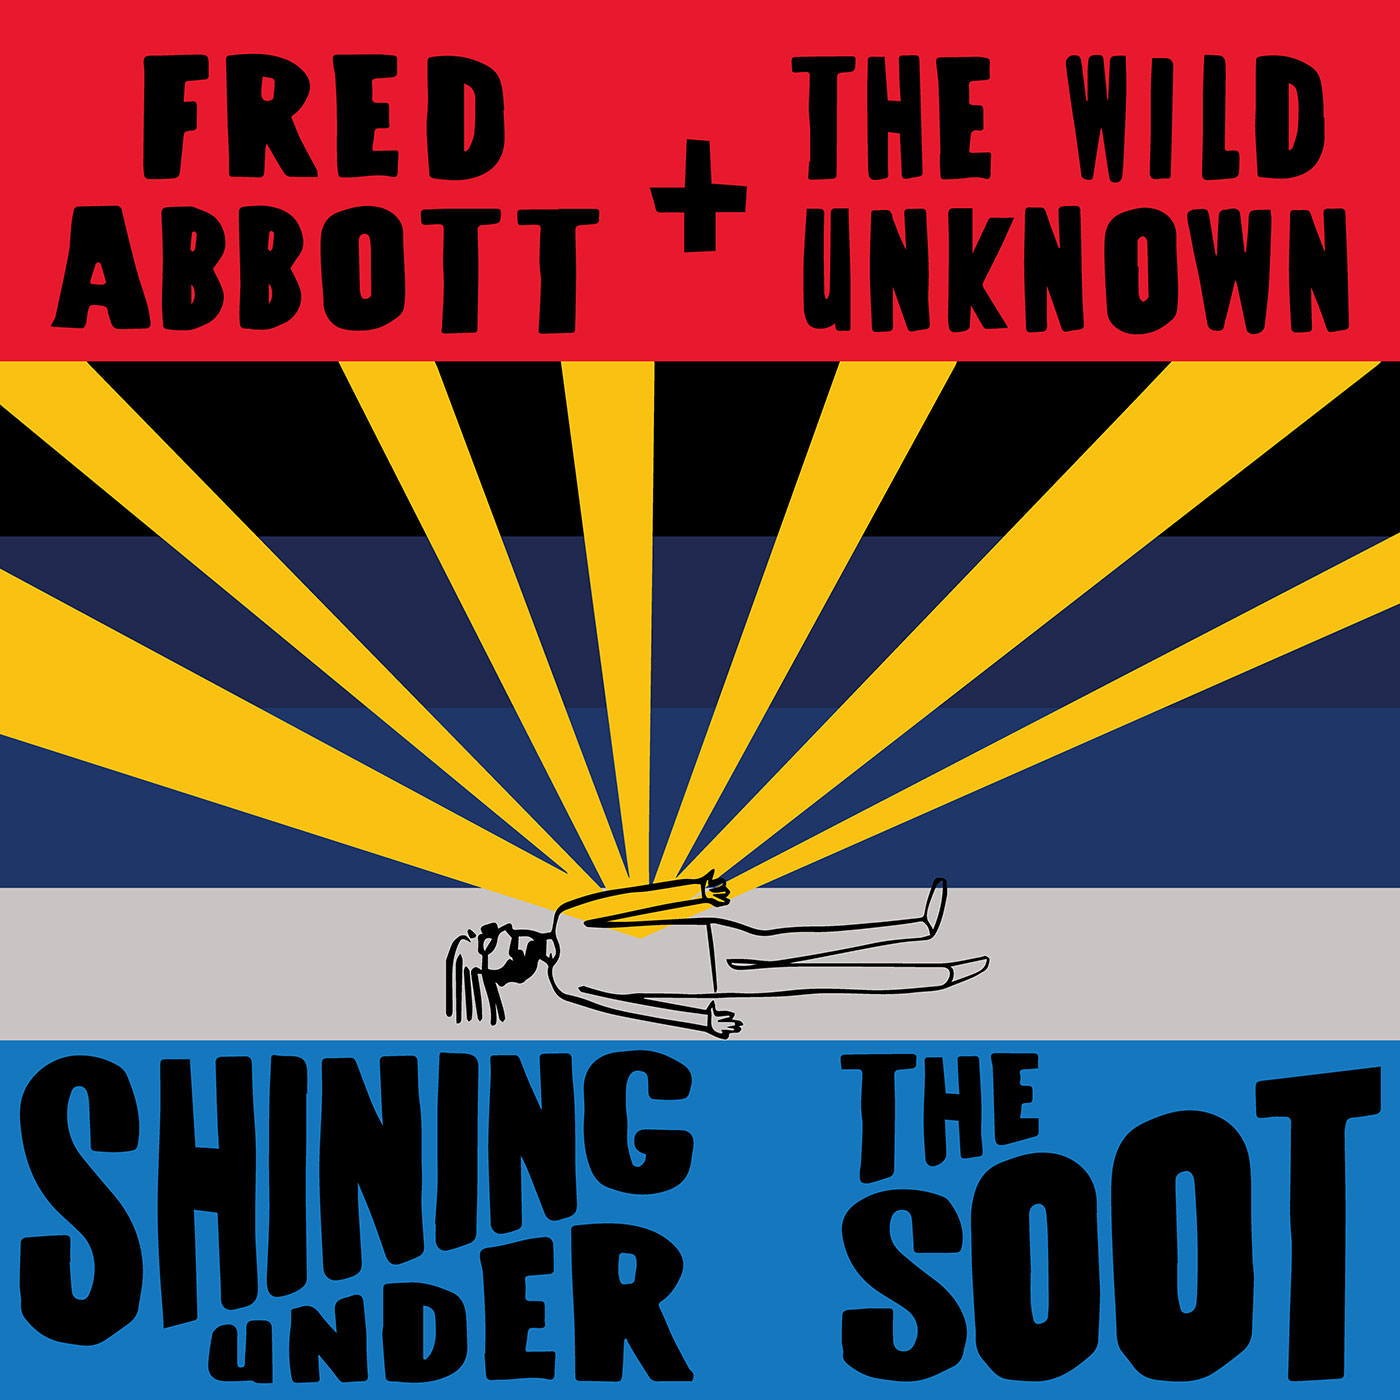 Fred Abbott & The Wild Unknown ‘Shining Under The Soot’ Album Artwork